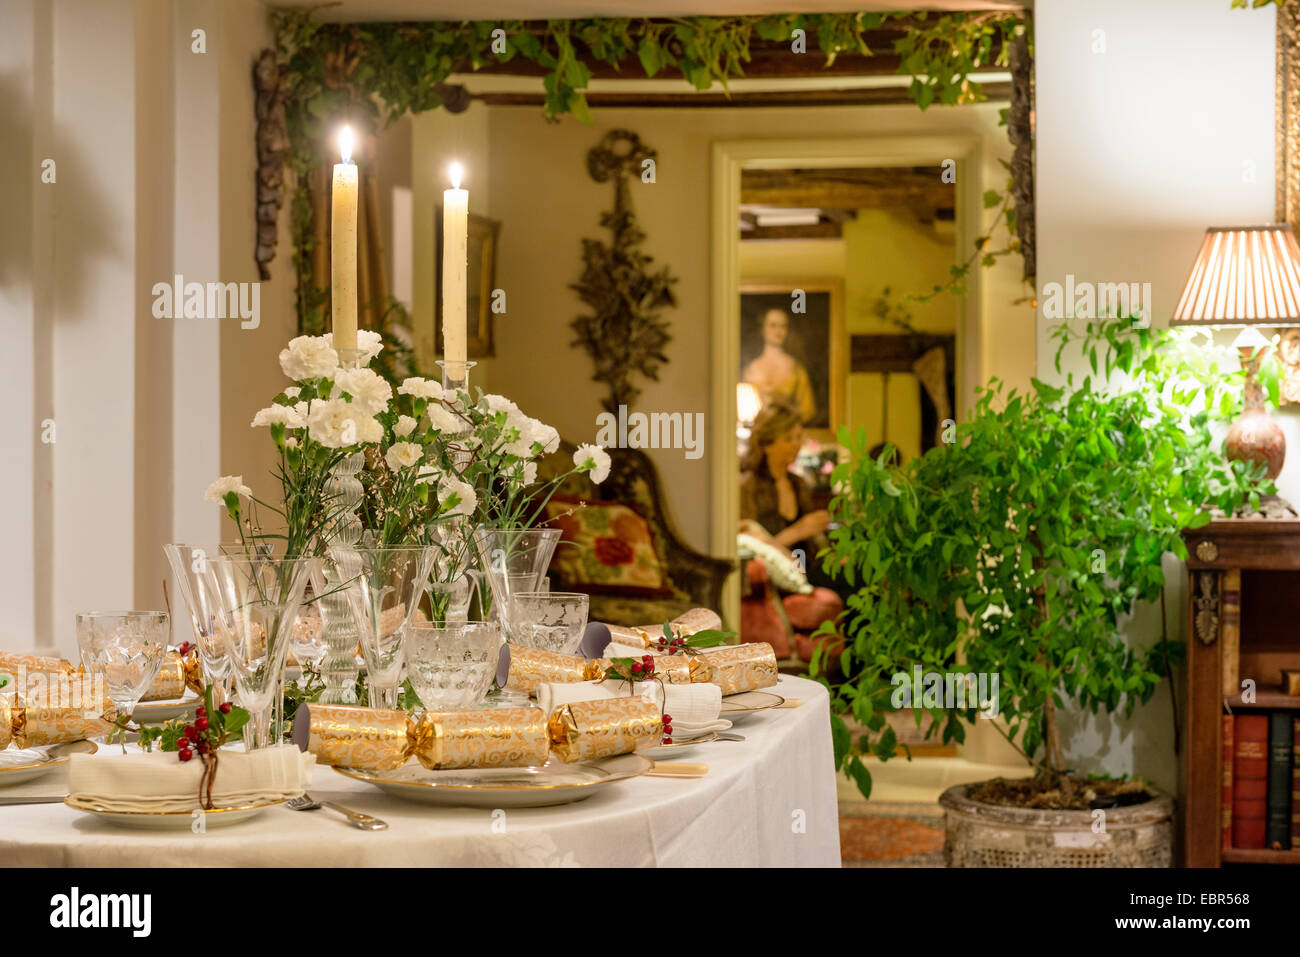 Oeillets blancs et des bougies ornent une table élégamment posé pour le dîner de Noël Banque D'Images